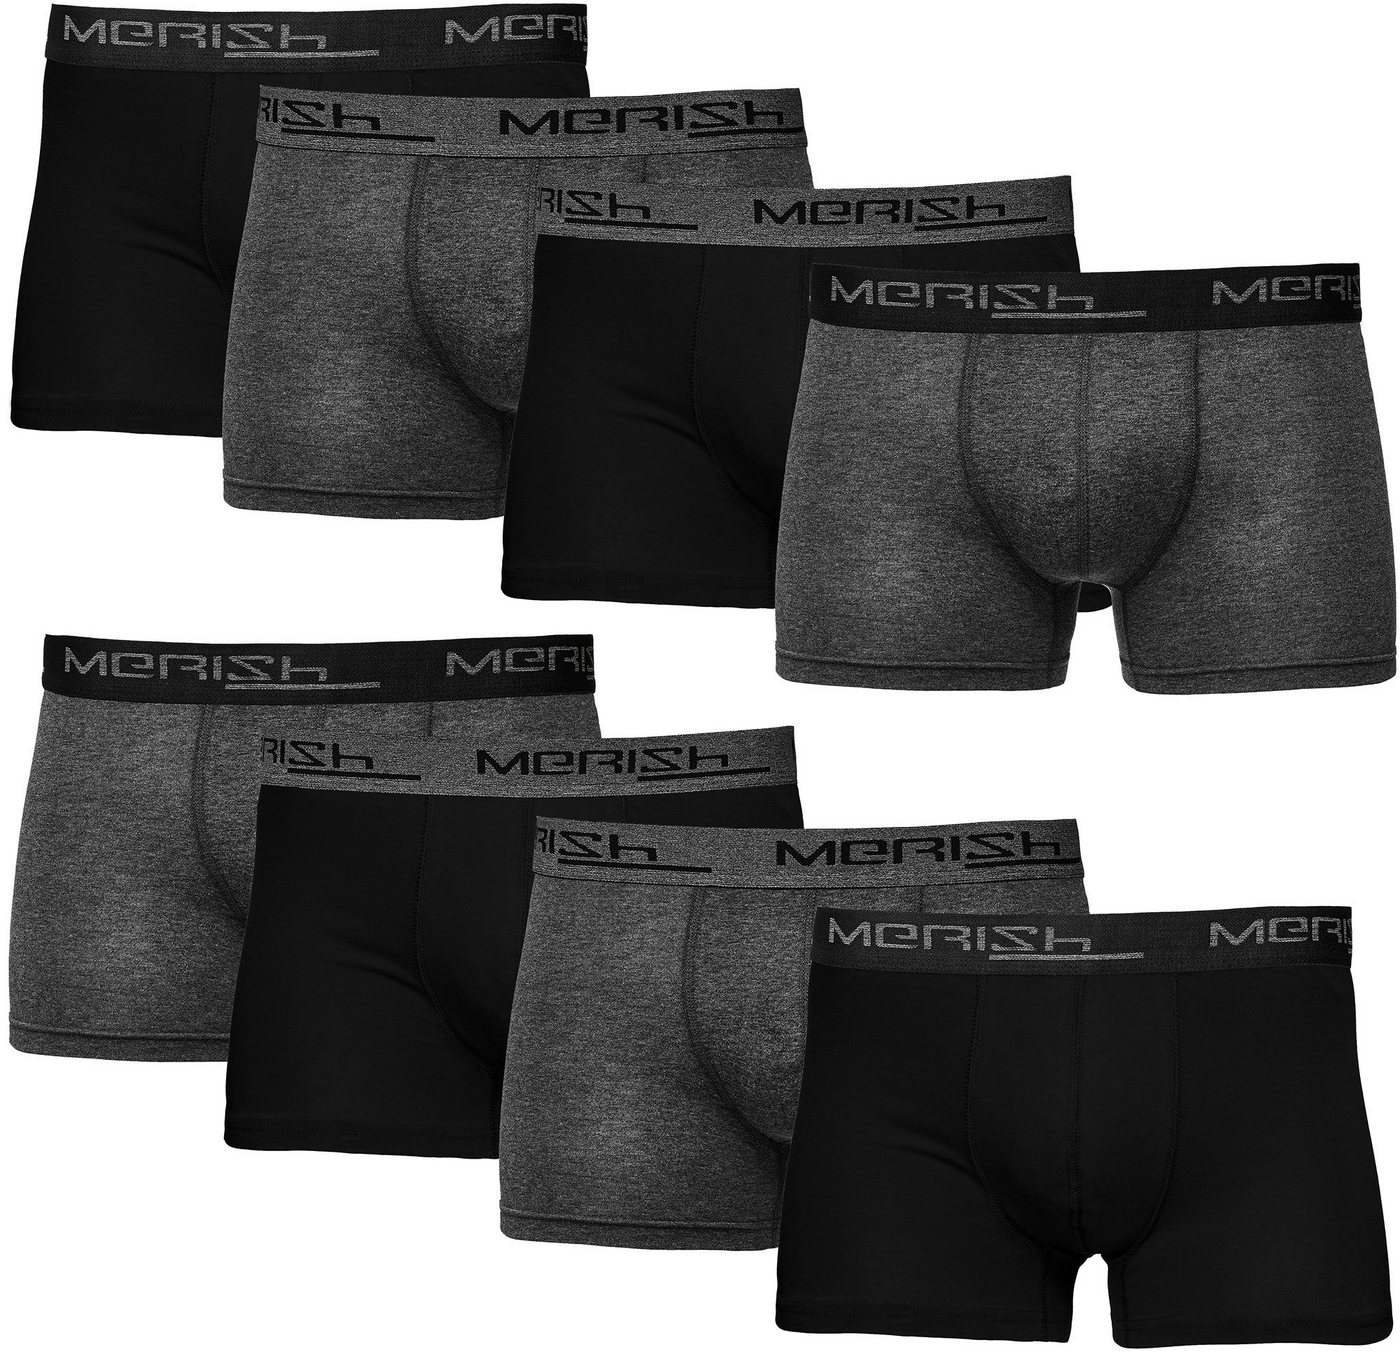 MERISH Boxershorts Herren Männer Unterhosen Baumwolle Premium Qualität perfekte Passform (Vorteilspack, 8er-Pack) S - 7XL von MERISH